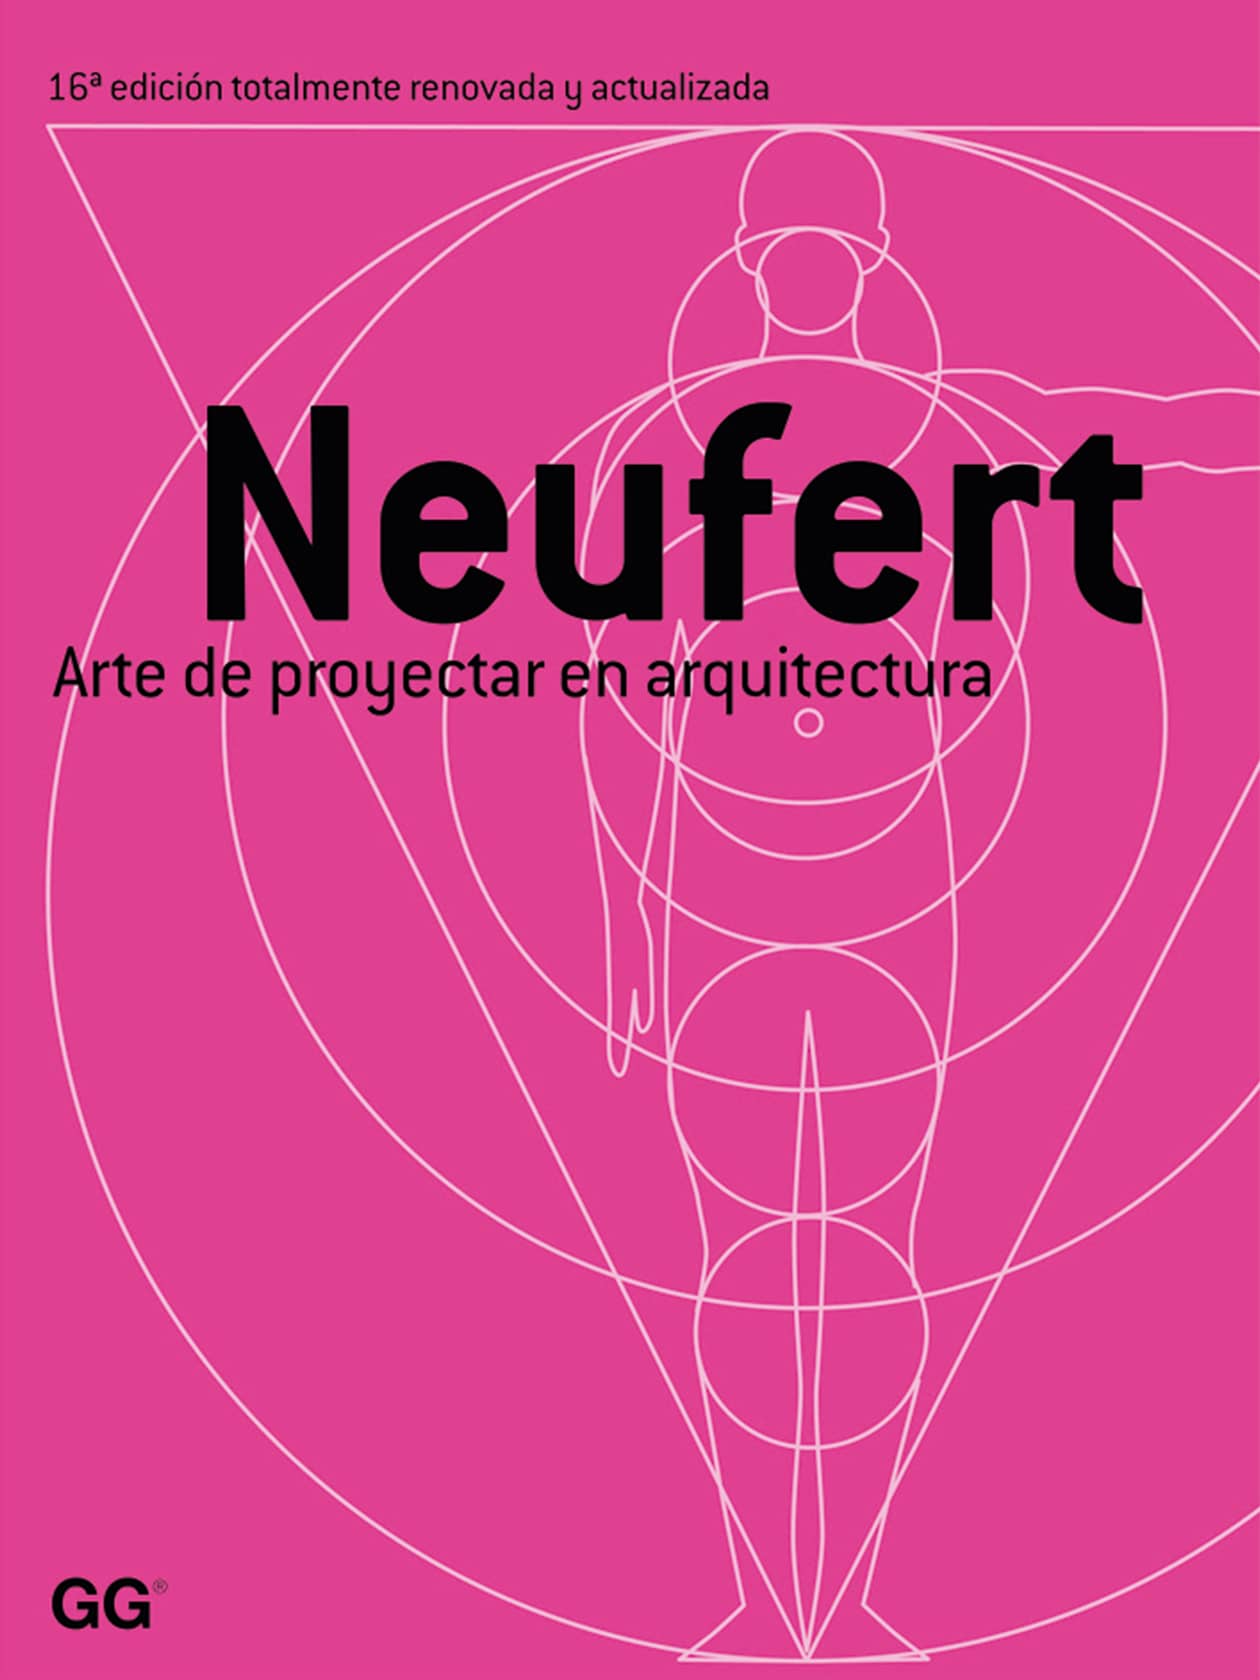 Spanish edition of the Bauentwurfslehre of Ernst Neufert